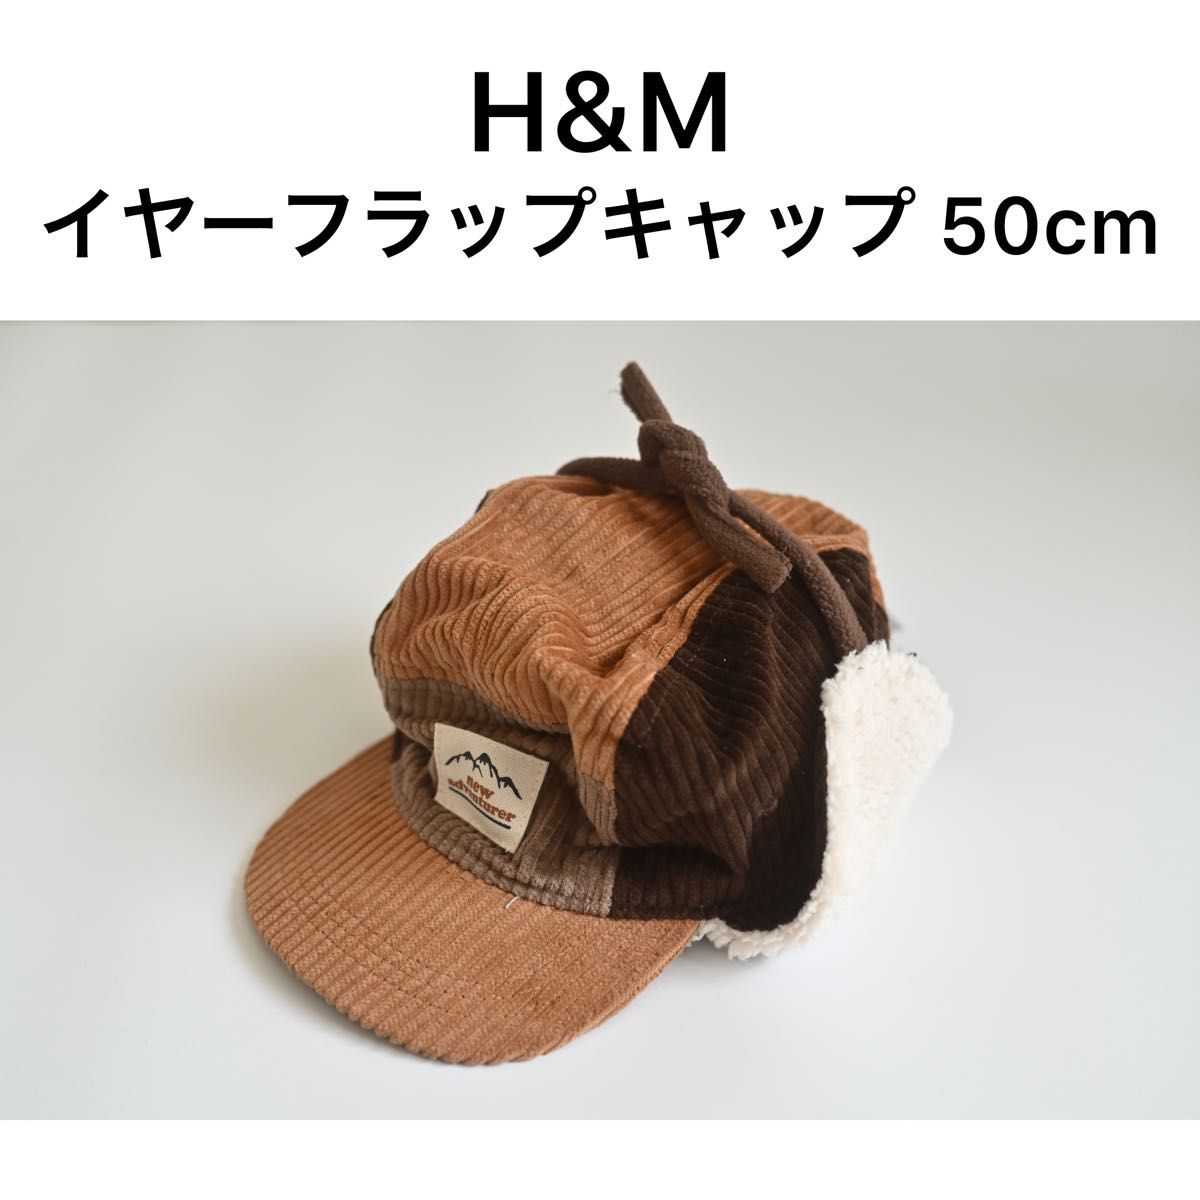 H&M イヤーフラップキャップ 48-50cm 帽子 キッズ フライトキャップ ブラウン コーデュロイ